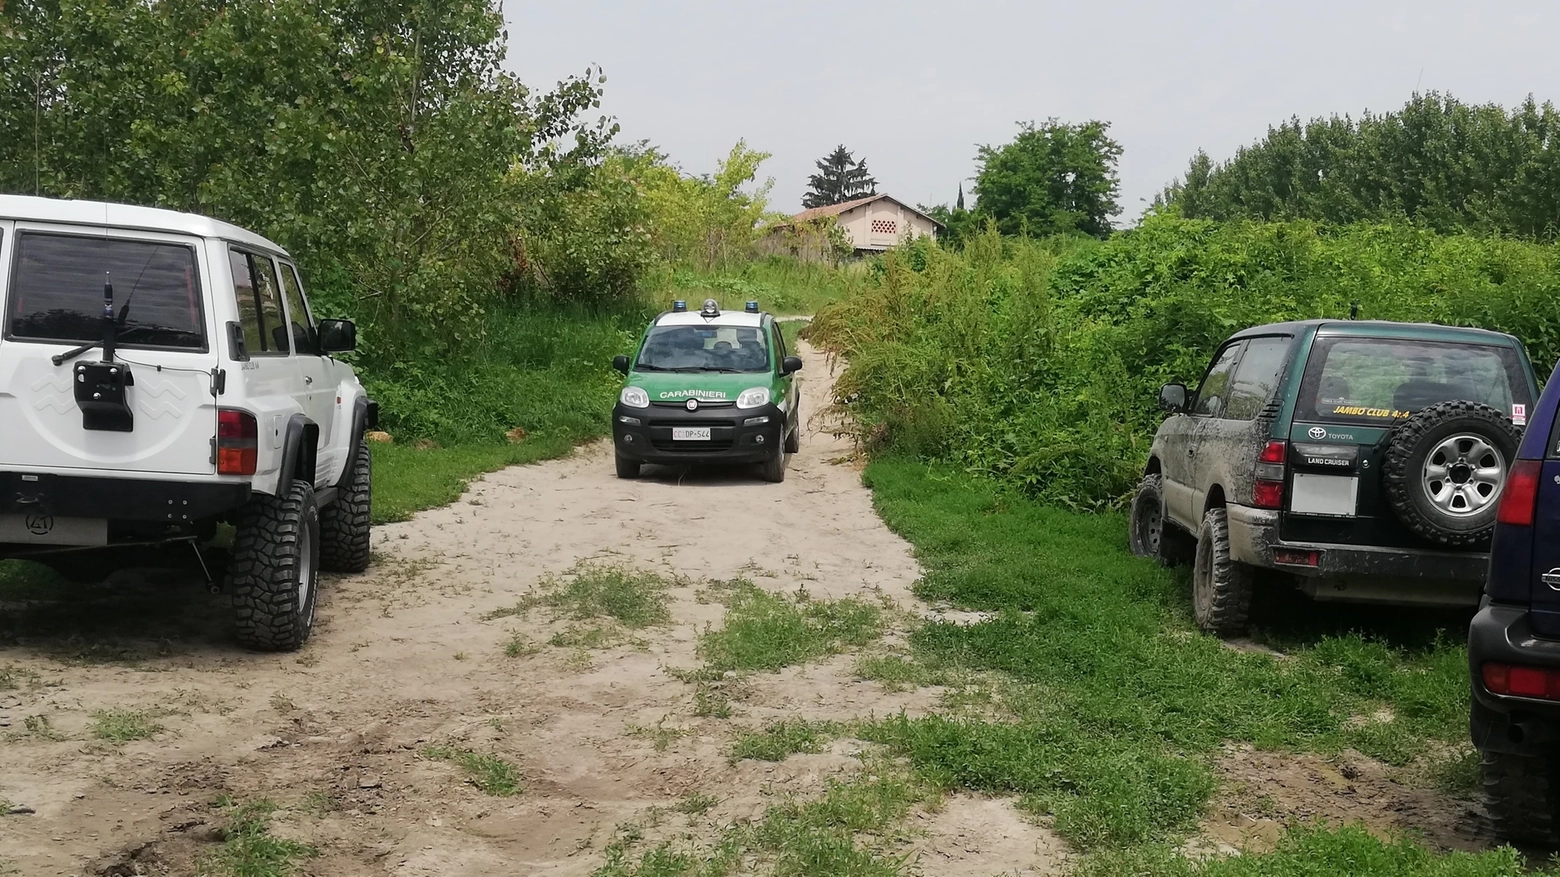 L'intervento dei carabinieri forestali alla gara abusiva di jeep